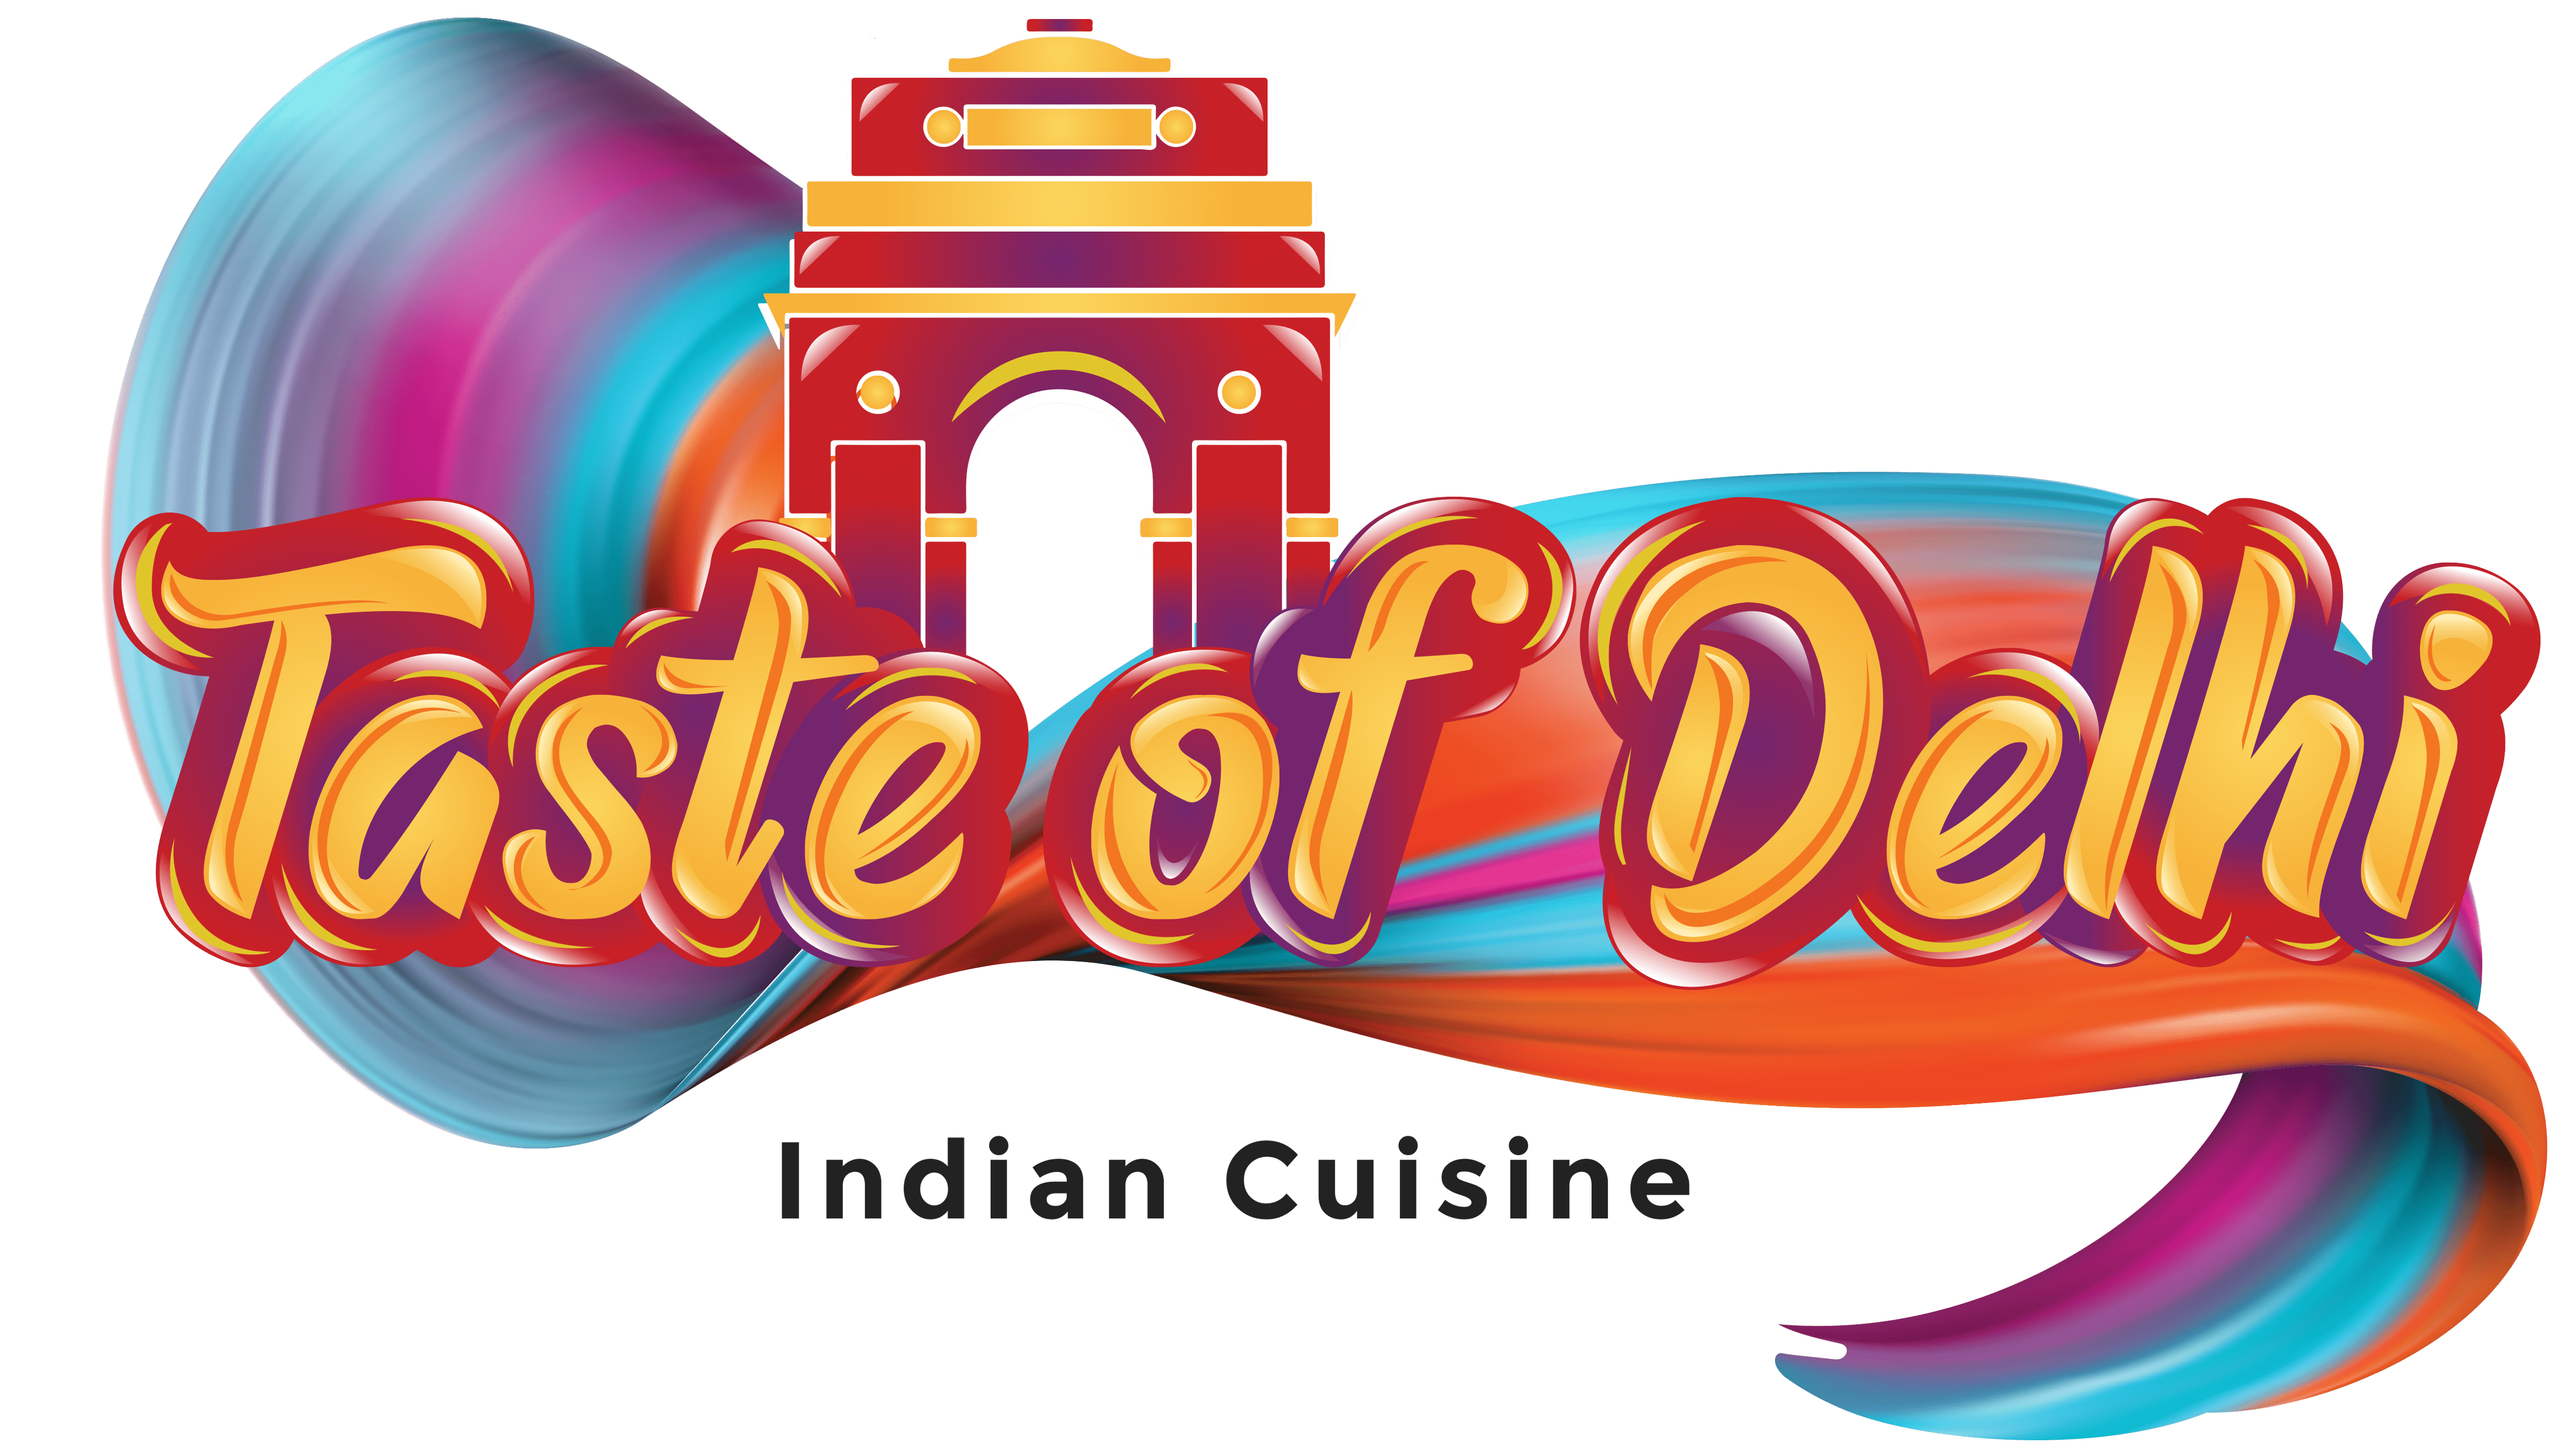 Taste of Delhi